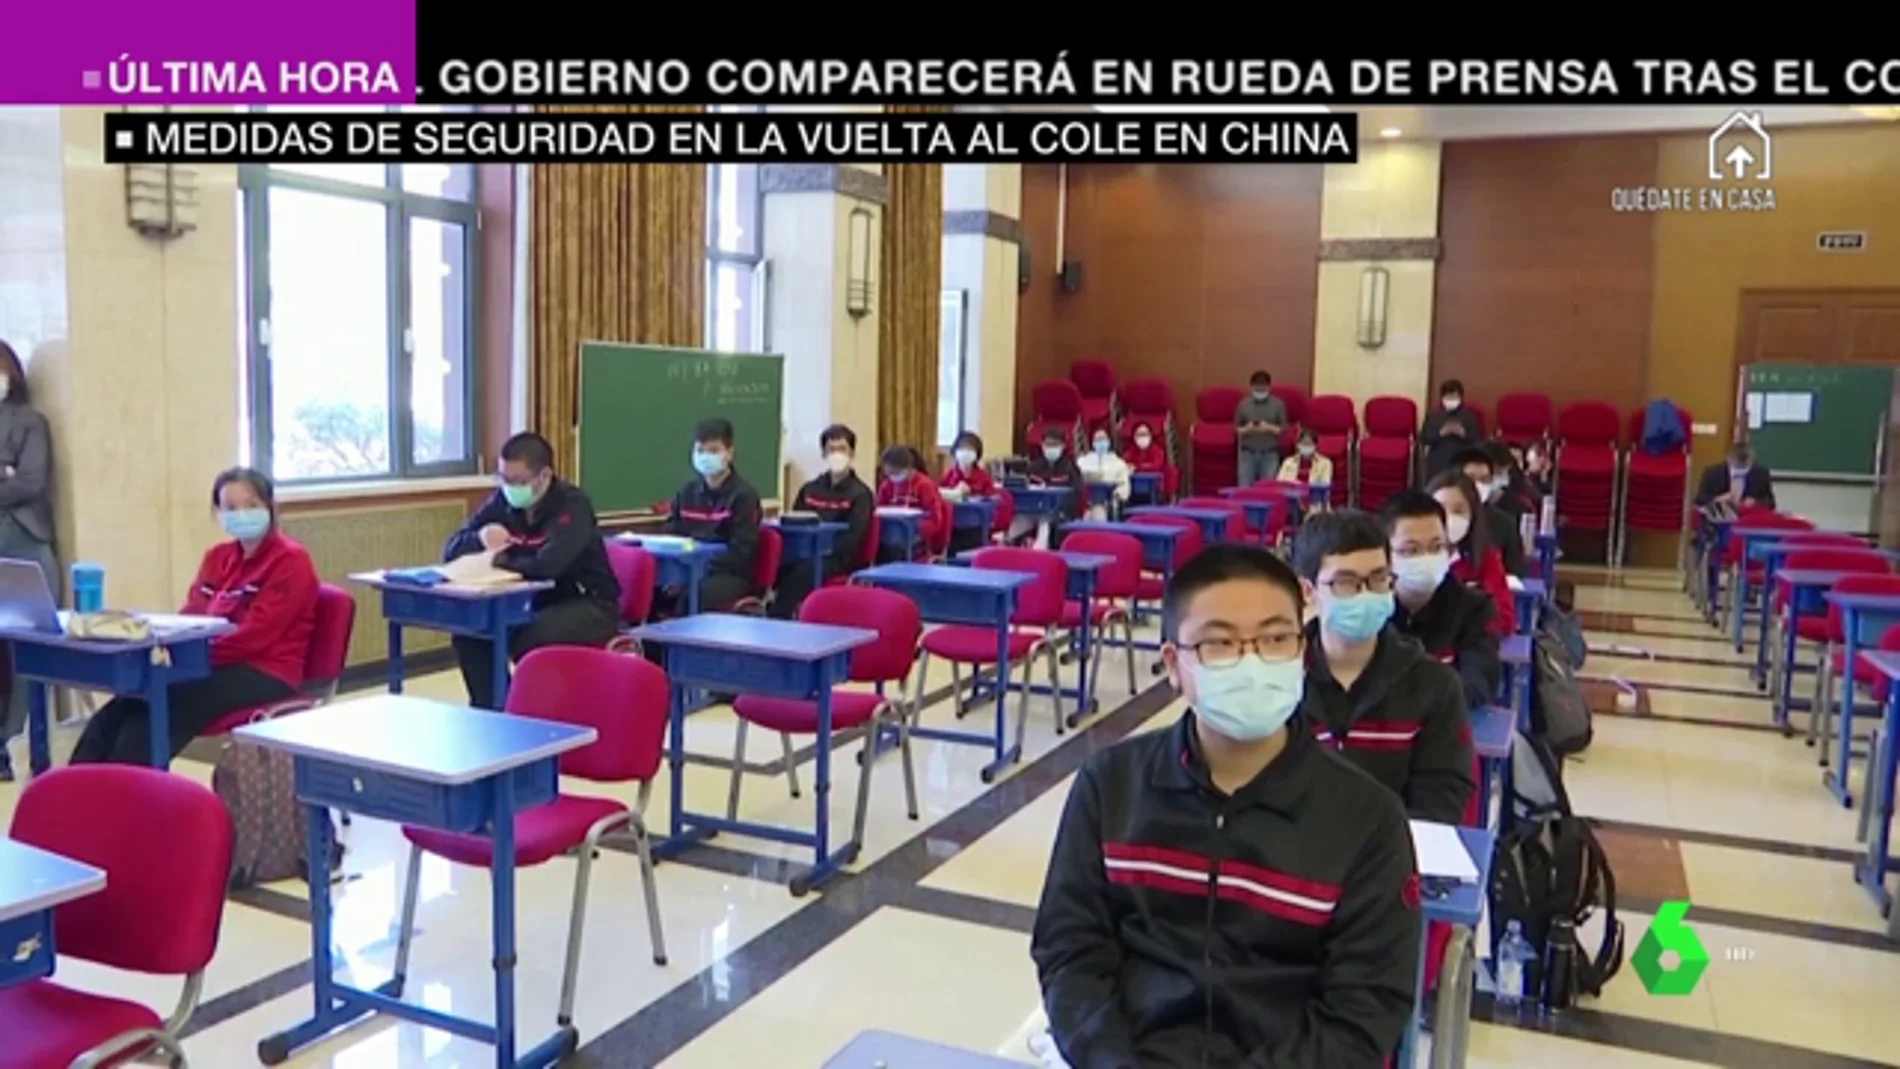 Con controles de temperatura y pantallas protectoras: las imágenes de la vuelta al colegio en China